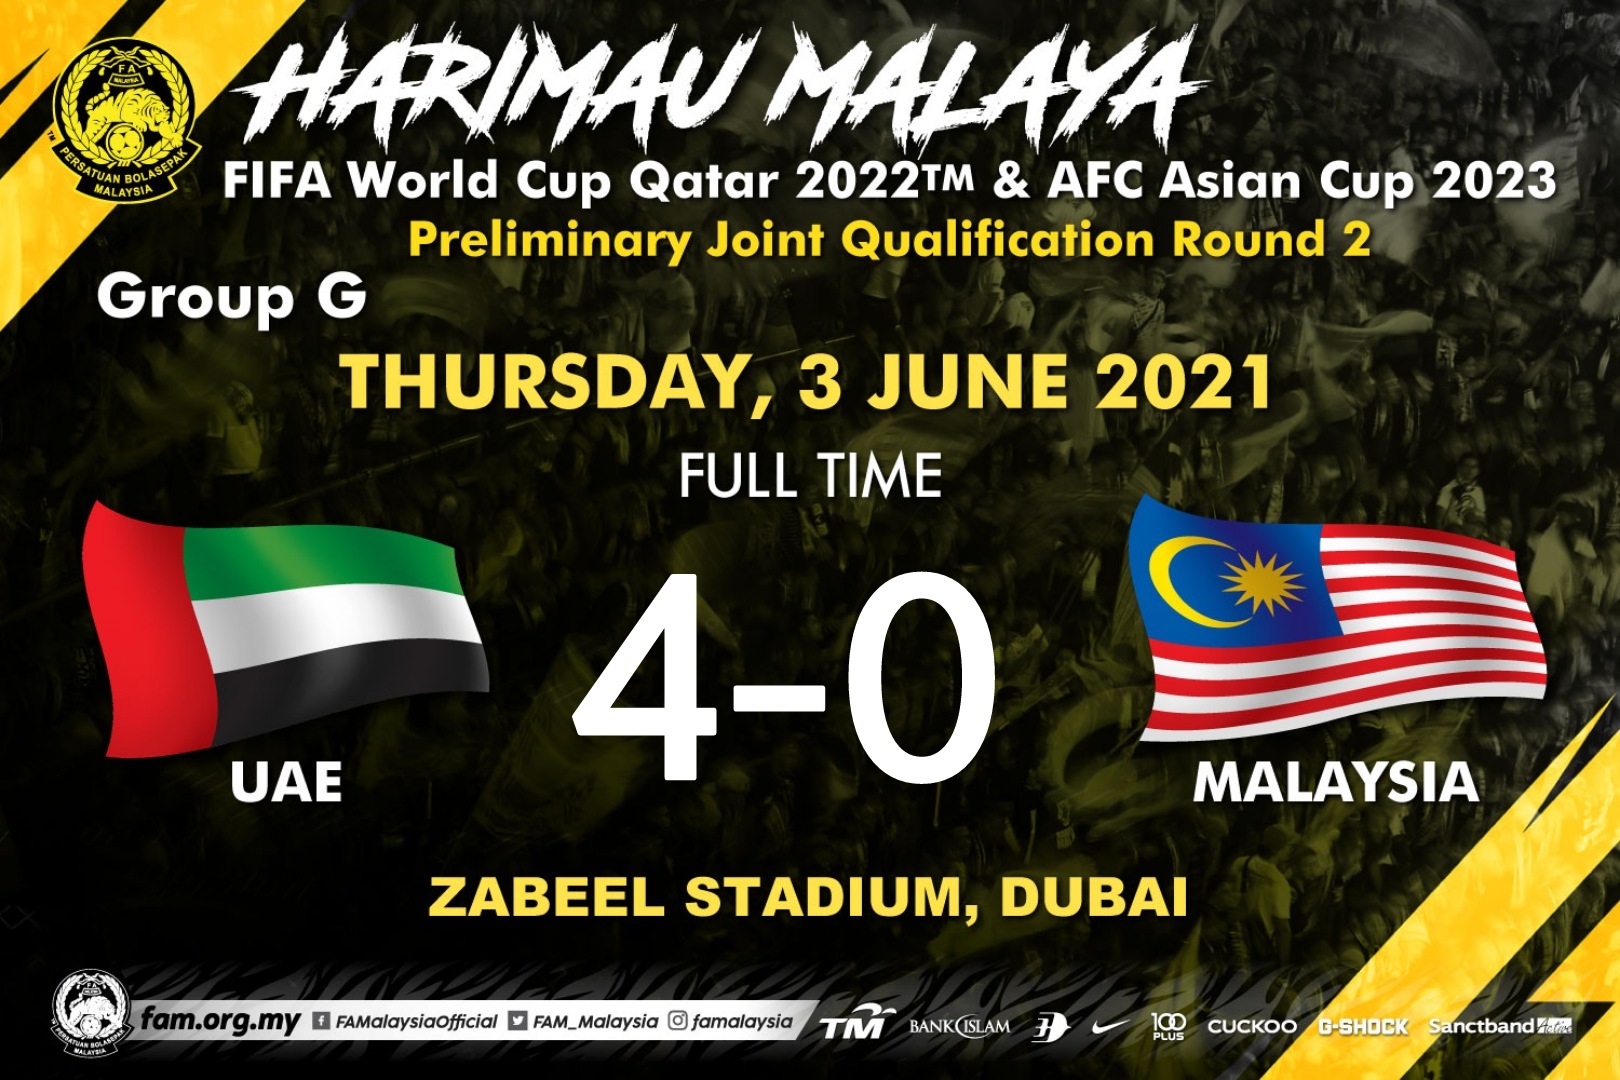 Với nhiều đội bóng tài năng và các sân vận động hiện đại, bạn sẽ được chứng kiến những trận đấu kịch tính và đầy cảm xúc. Với lối chơi tinh tế và sự nghiệp đang dần phát triển, bóng đá Malaysia sẽ thật sự đáng để xem.